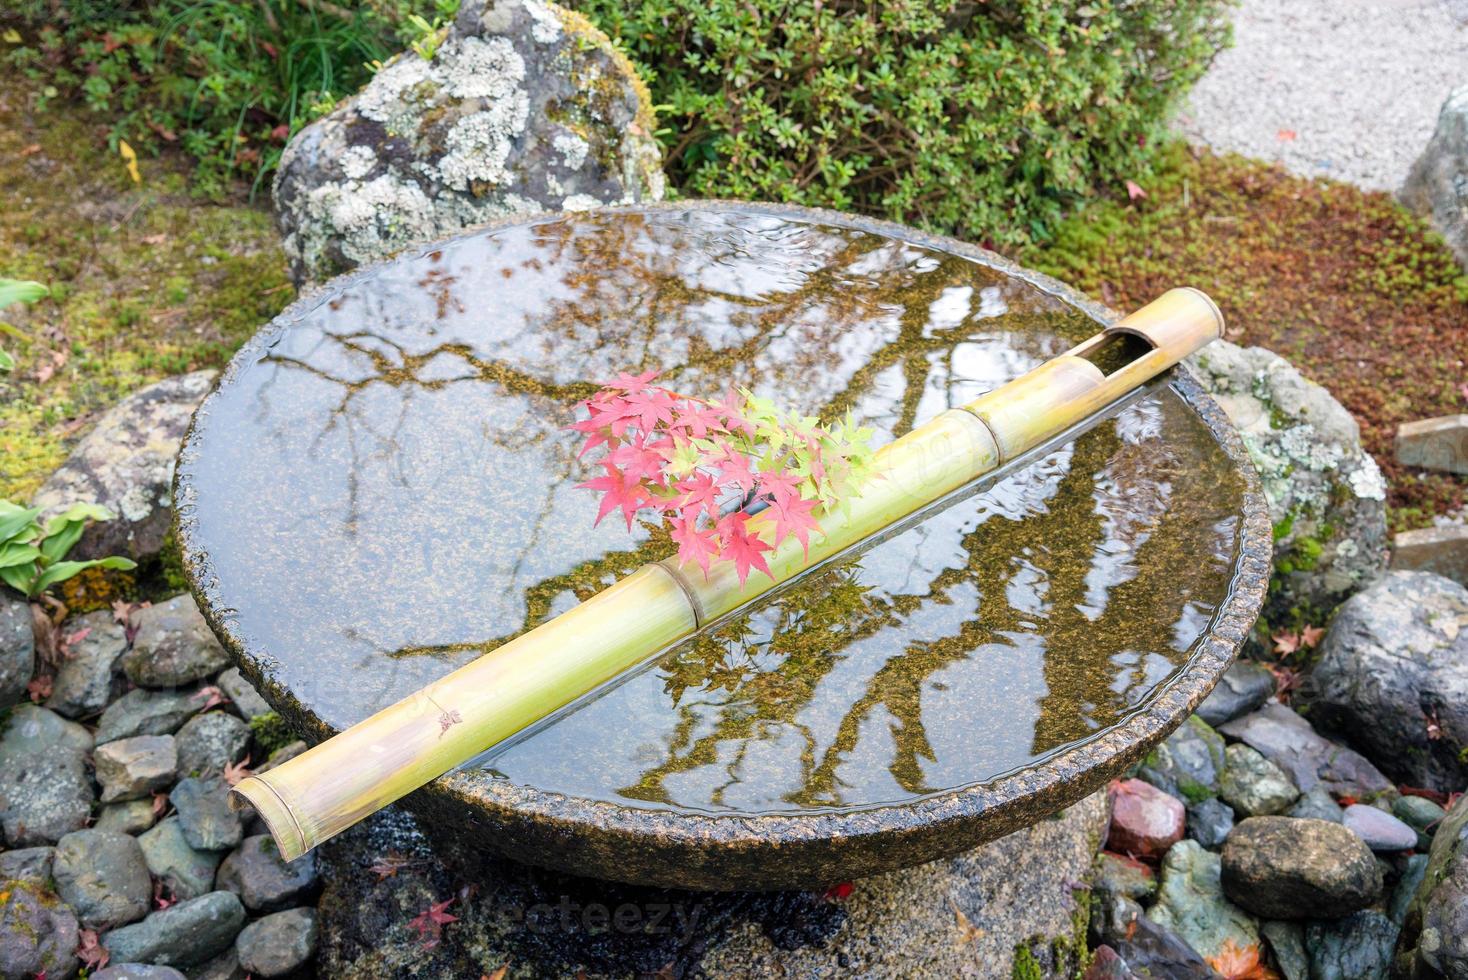 jardín zen japonés para la relajación, el equilibrio y la armonía, la espiritualidad o el bienestar en kyoto, japón foto